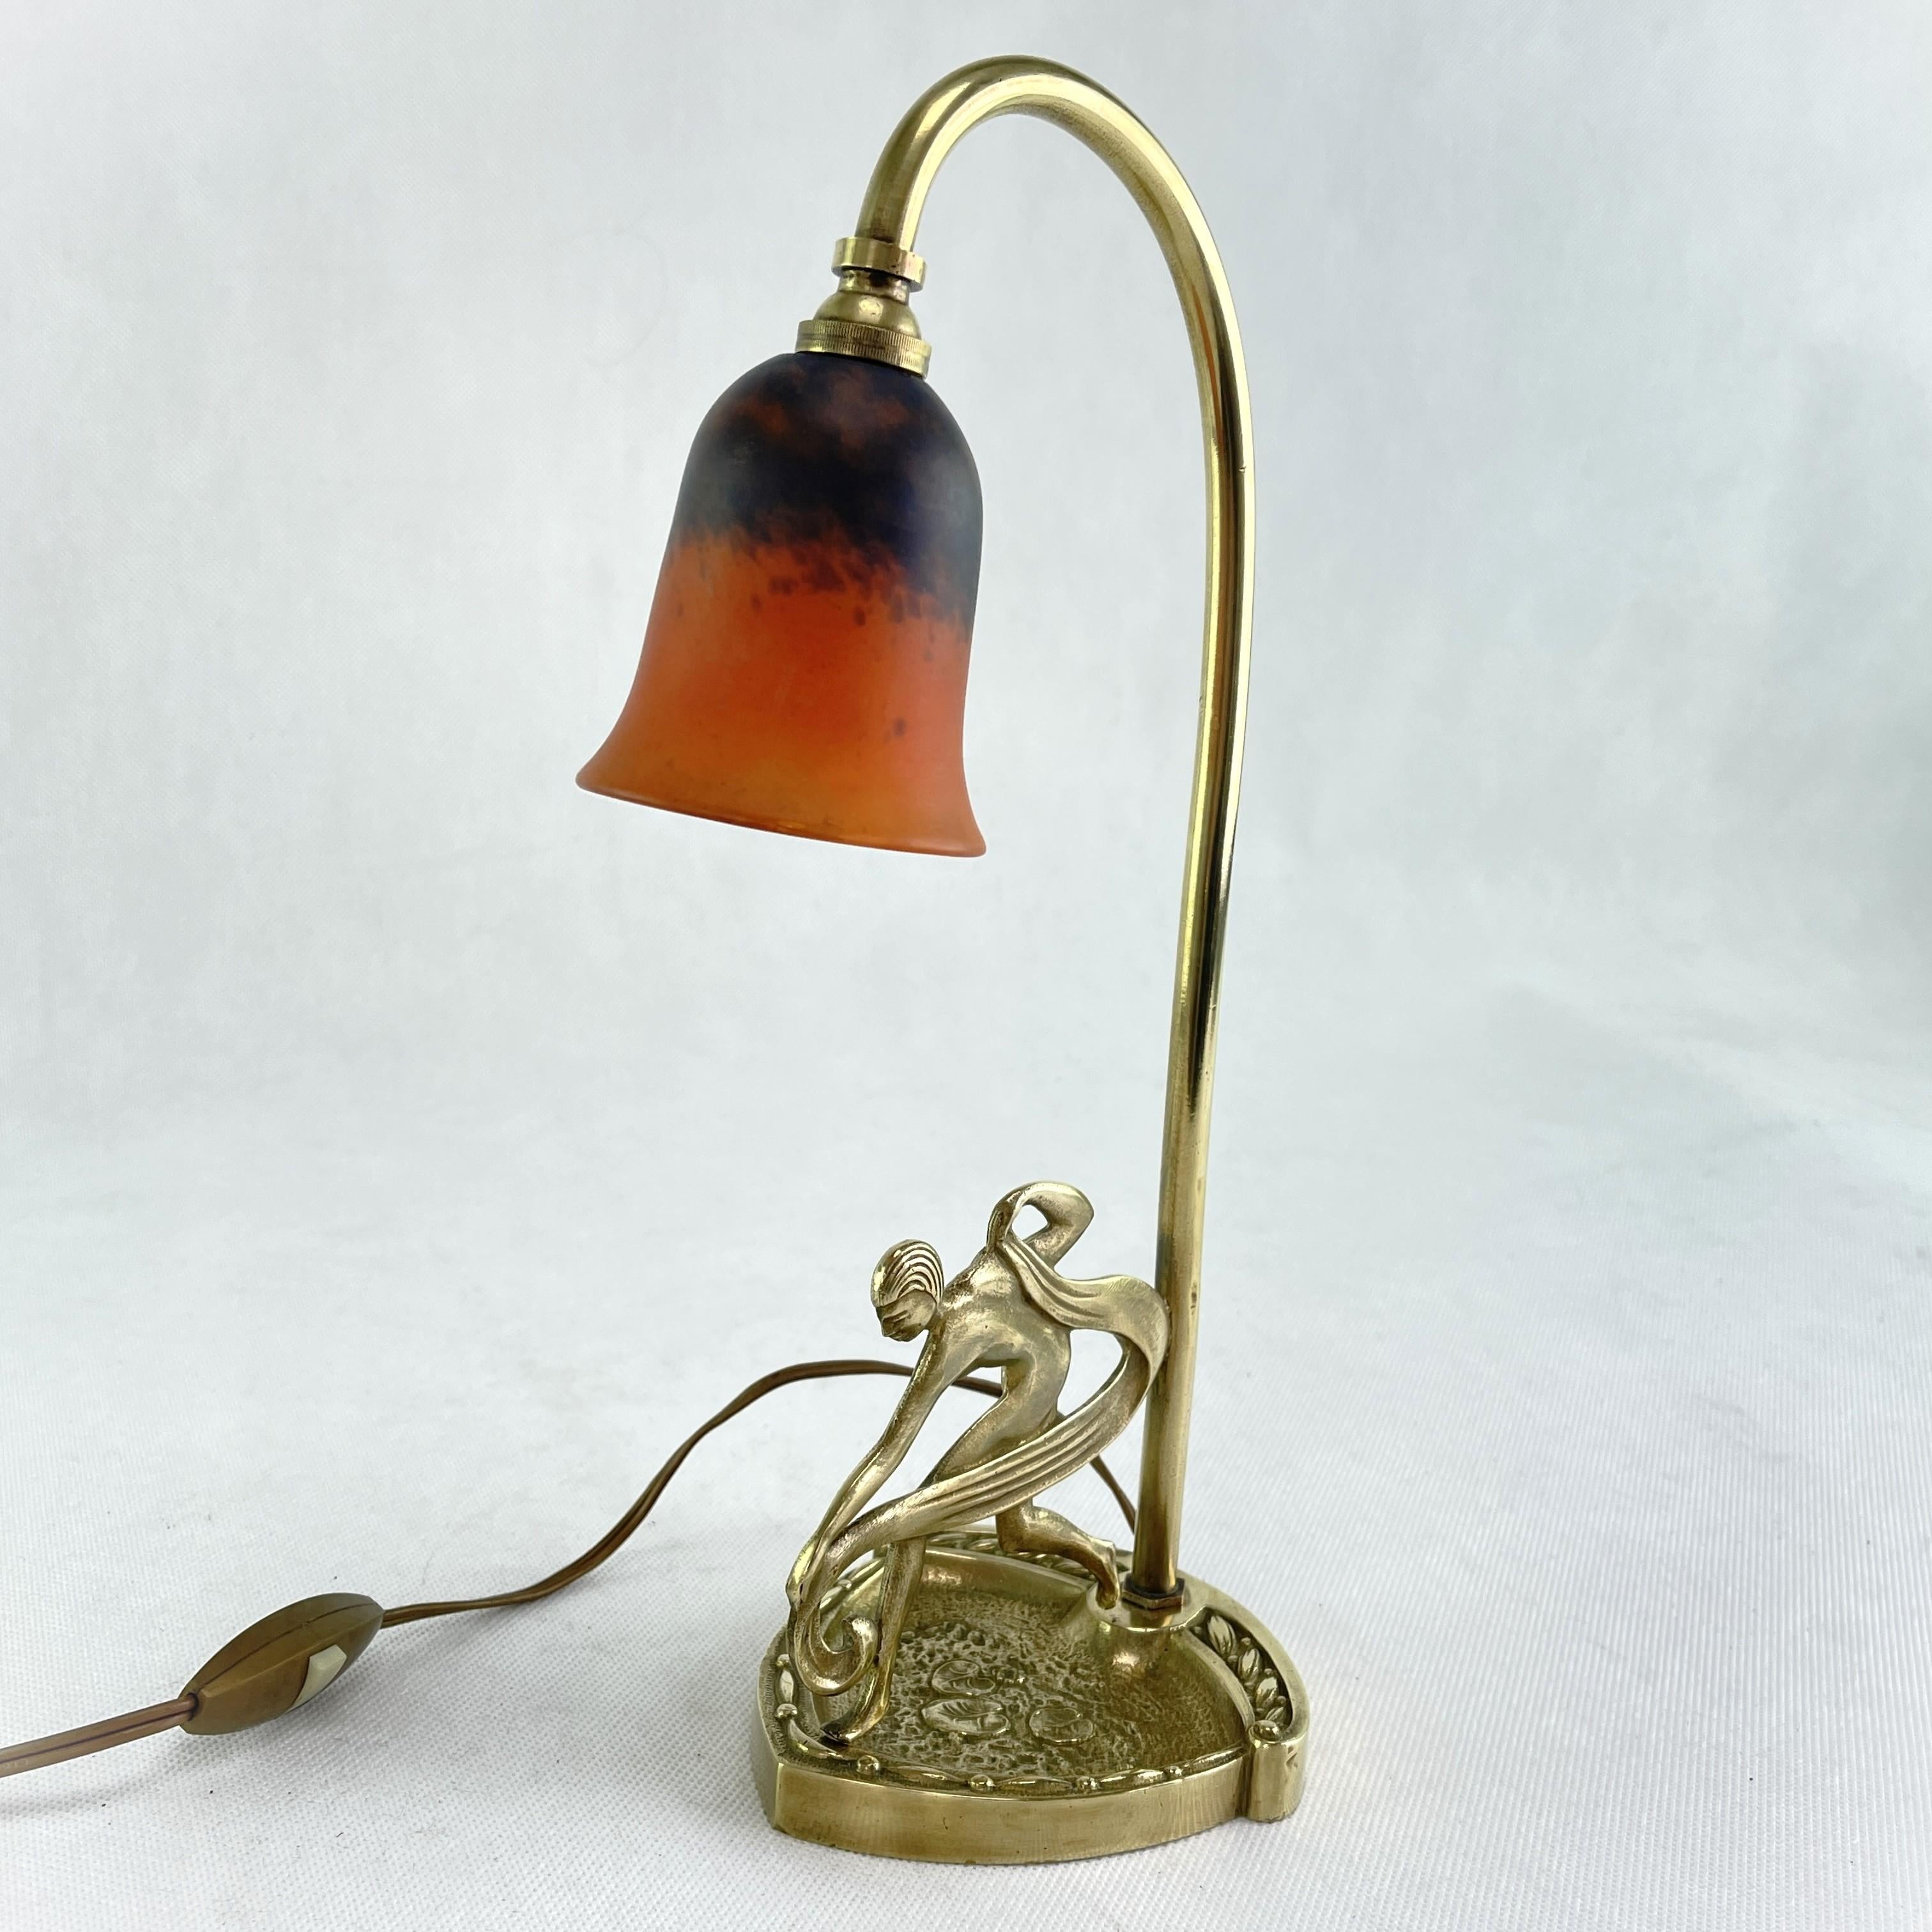 Lampe de table Art Déco Dancer par Schneider - années 1930

Cette lampe de table originale séduit par son design Art déco simple et sobre. La lampe est signée 